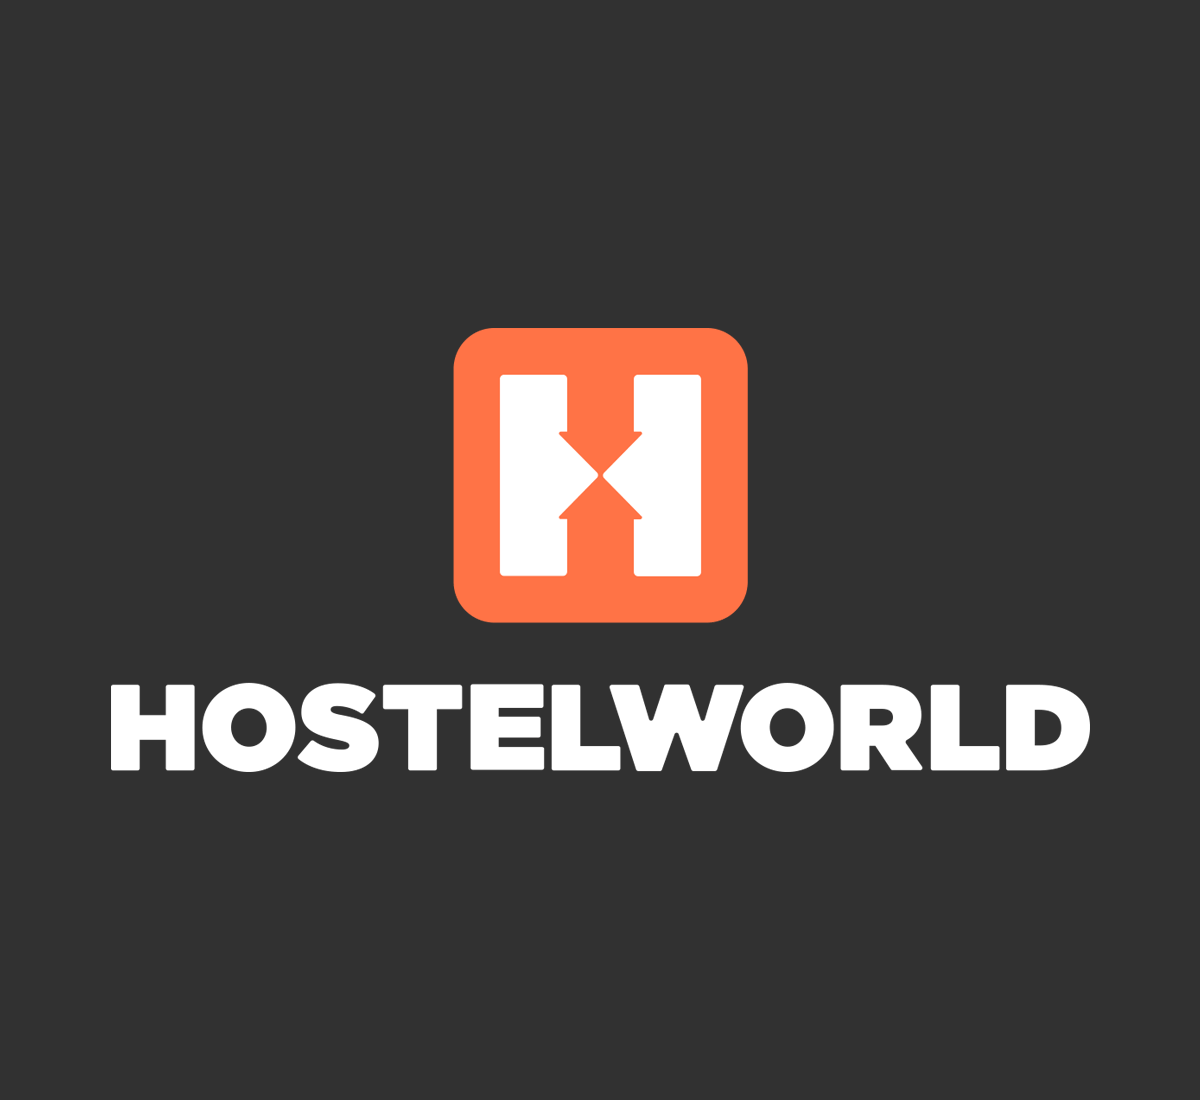 hostelworld mobile logo black background orange icon